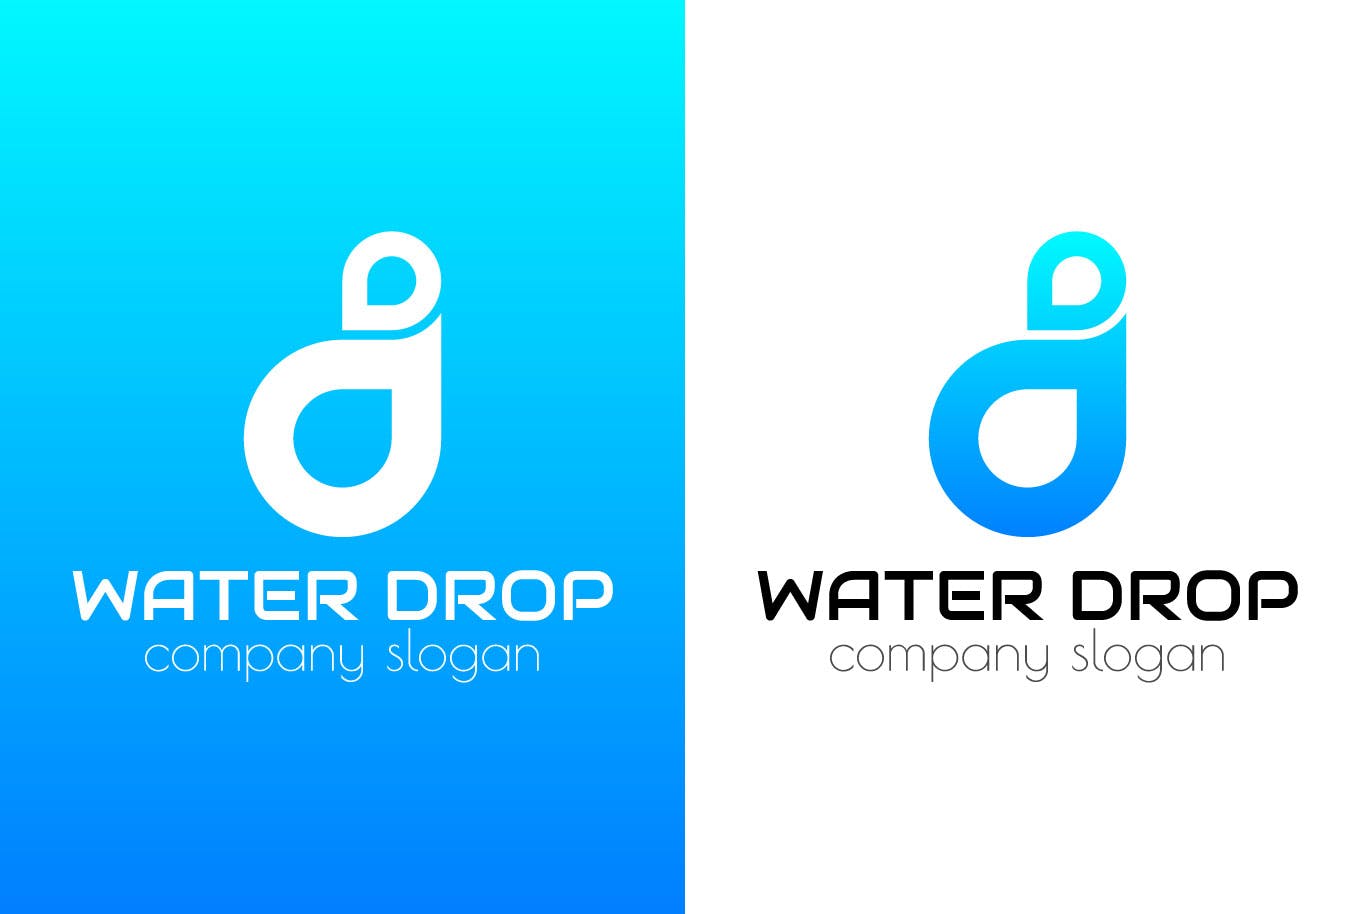 水滴几何图形创意Logo设计16图库精选模板 Water Drop Creative Logo Template插图(1)